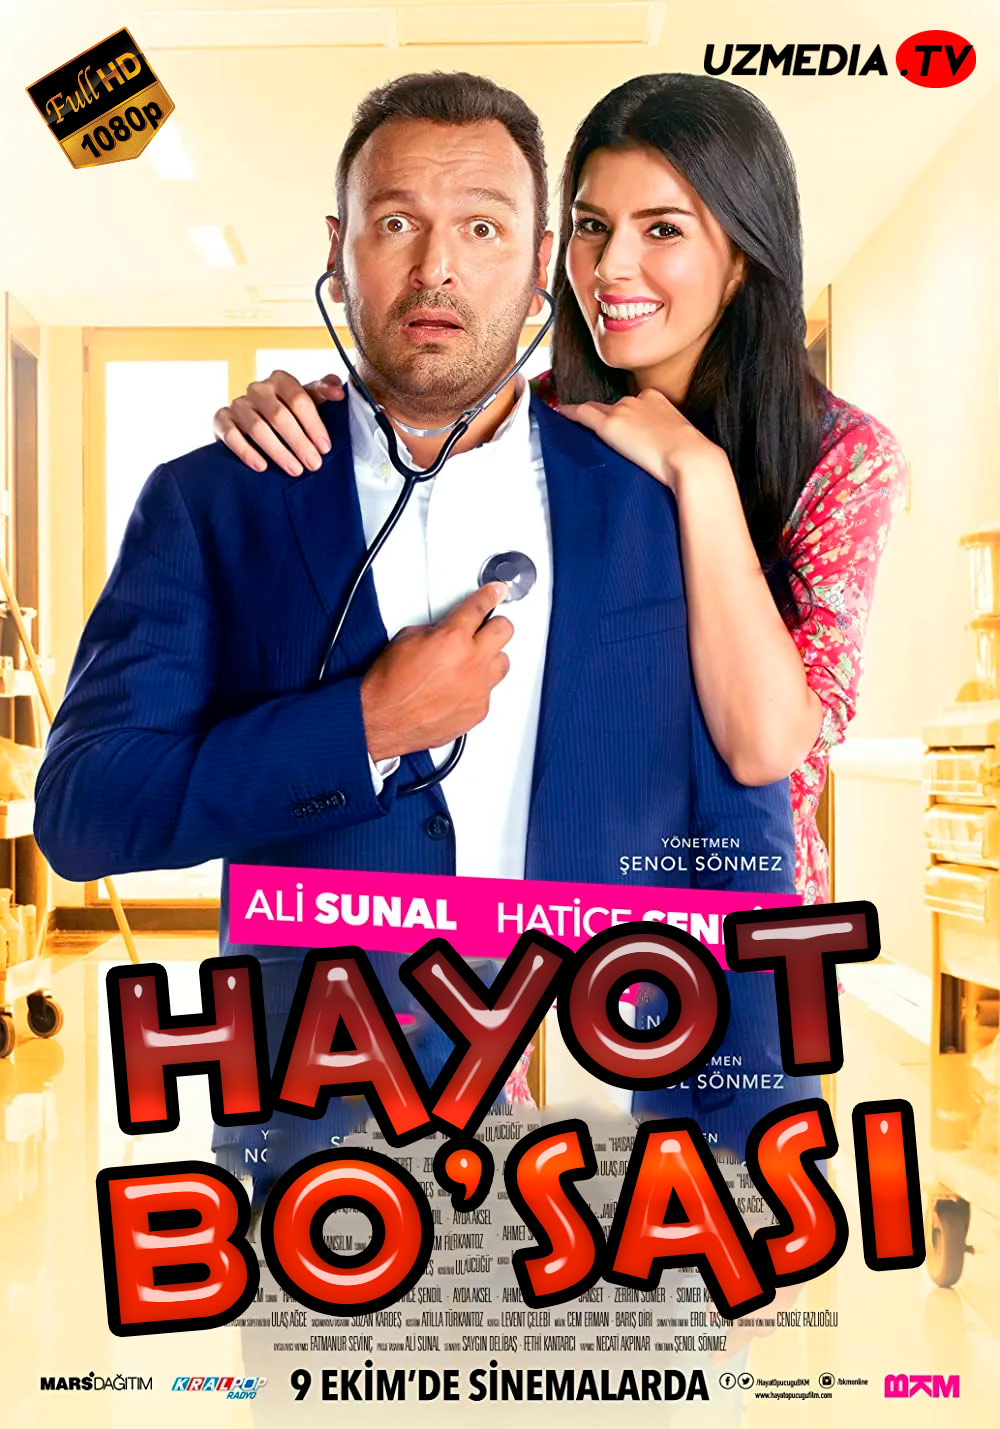 Taqdir bo'sasi / Hayot bo'sasi Turk kino Uzbek tilida O'zbekcha 2015 tarjima kino Full HD skachat